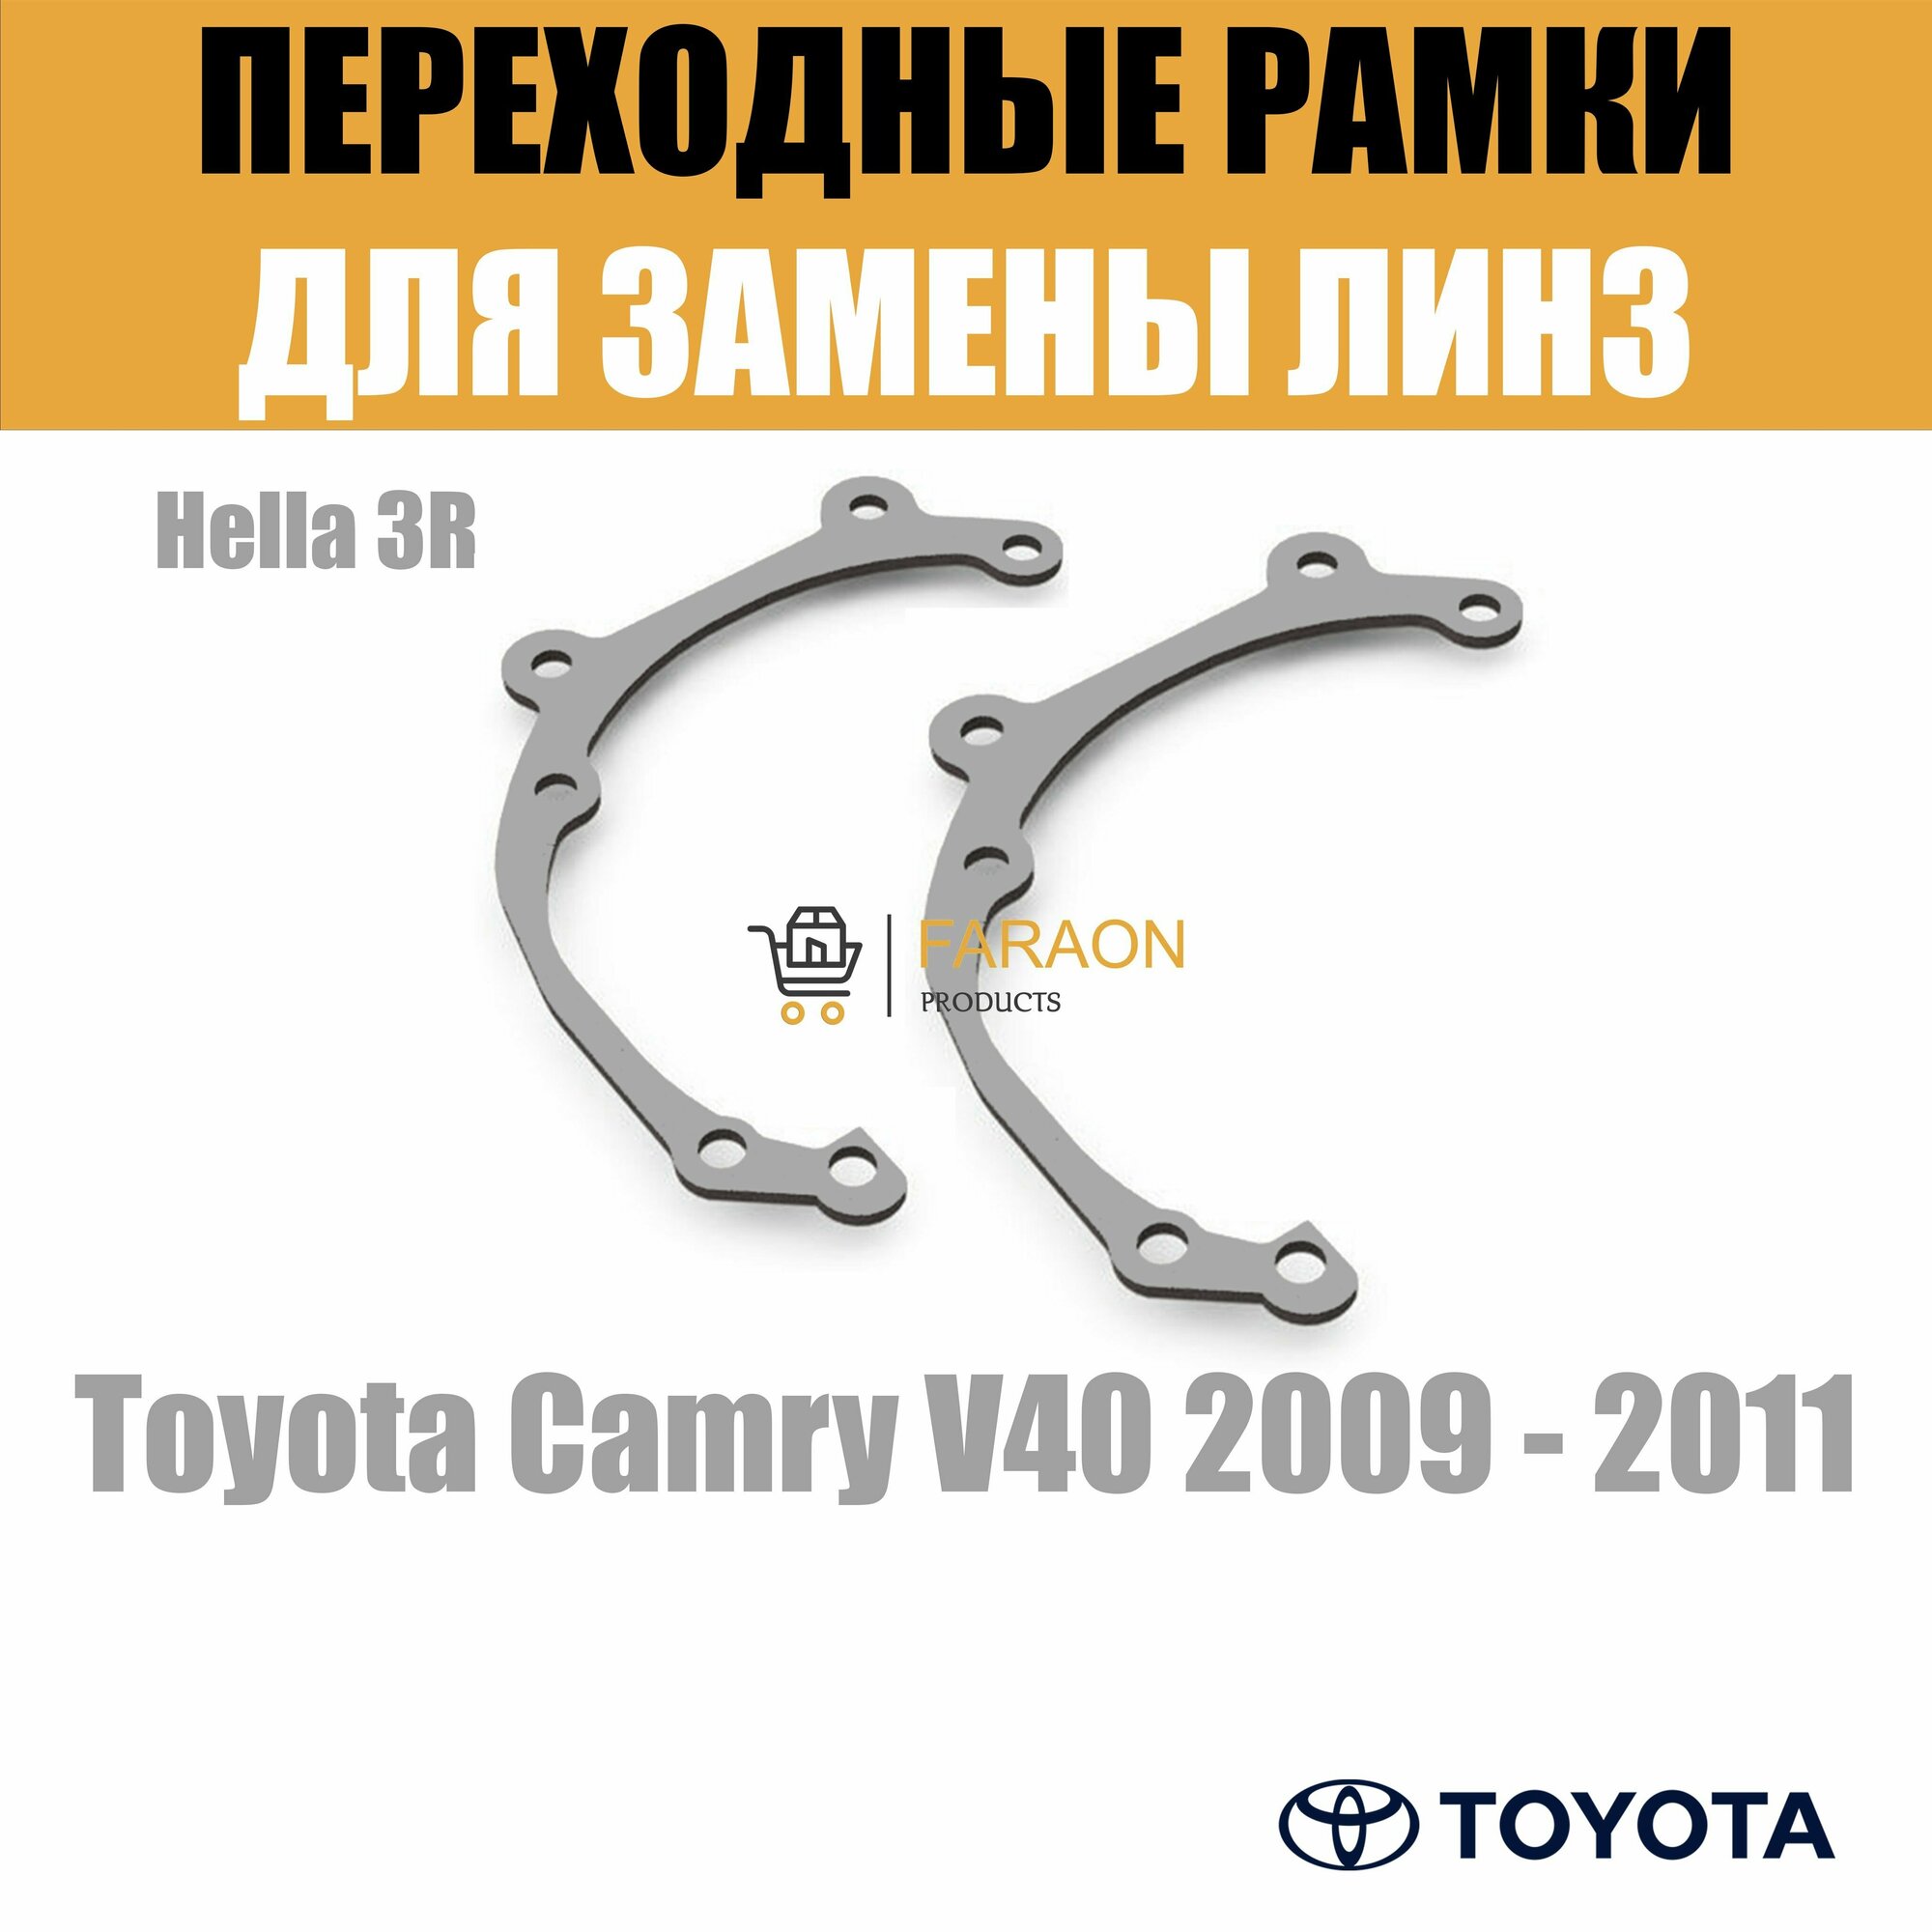 Переходные рамки для Toyota Camry V40 2009 - 2011 г. в. под модуль Hella 3R/Hella 3 (Комплект 2шт)